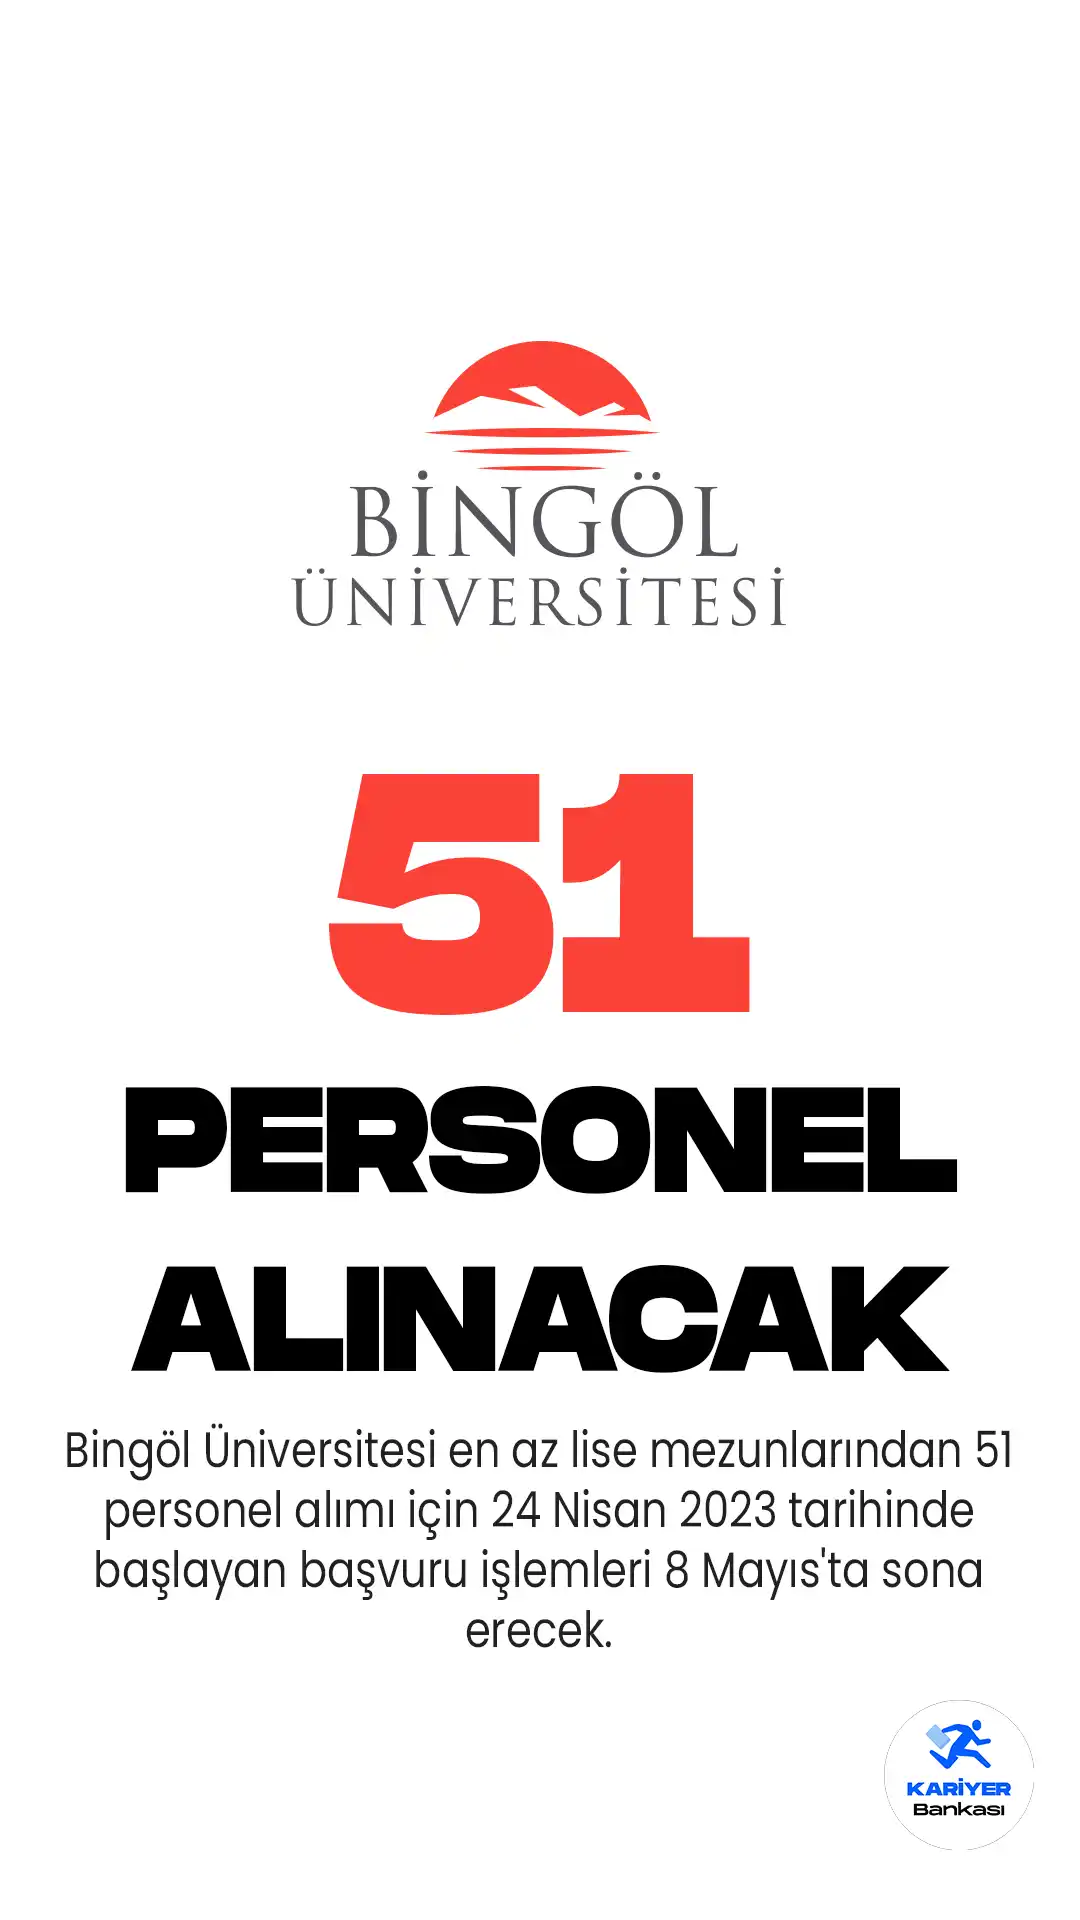 Bingöl Üniversitesi en az lise mezunlarından 51 personel alımı için 24 Nisan 2023 tarihinde başlayan başvuru işlemleri 8 Mayıs'ta sona erecek.